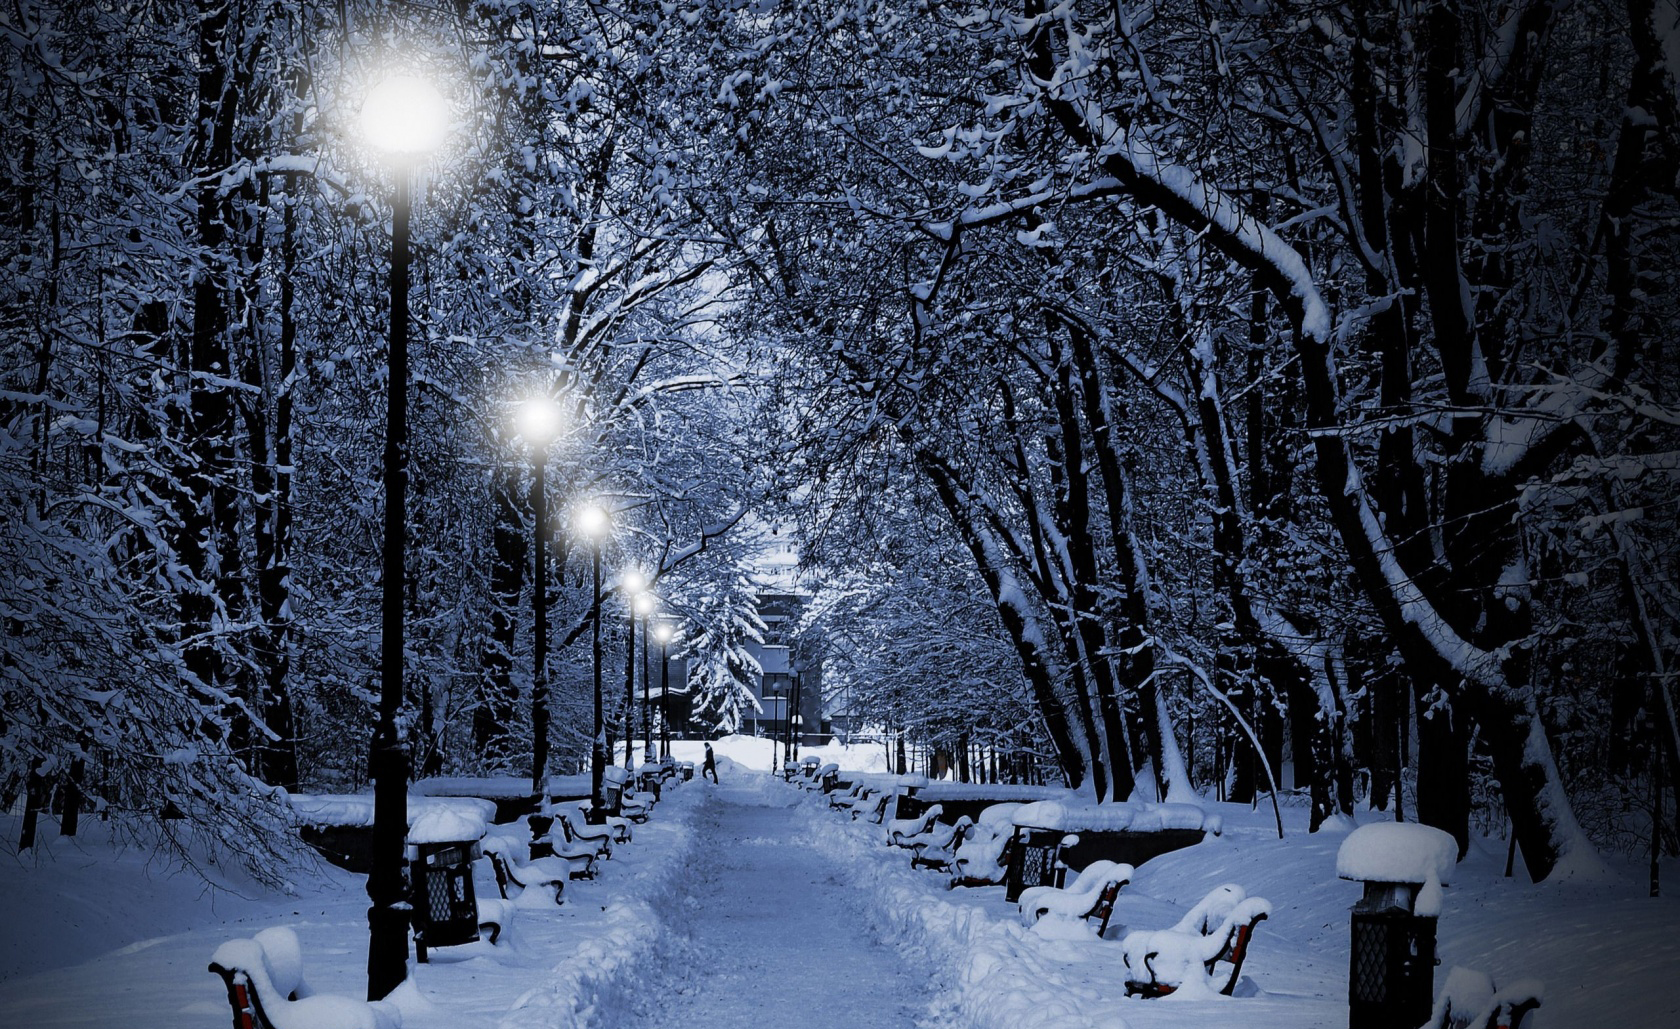 snowy_park_at_night-wallpaper-1680x1050.jpg